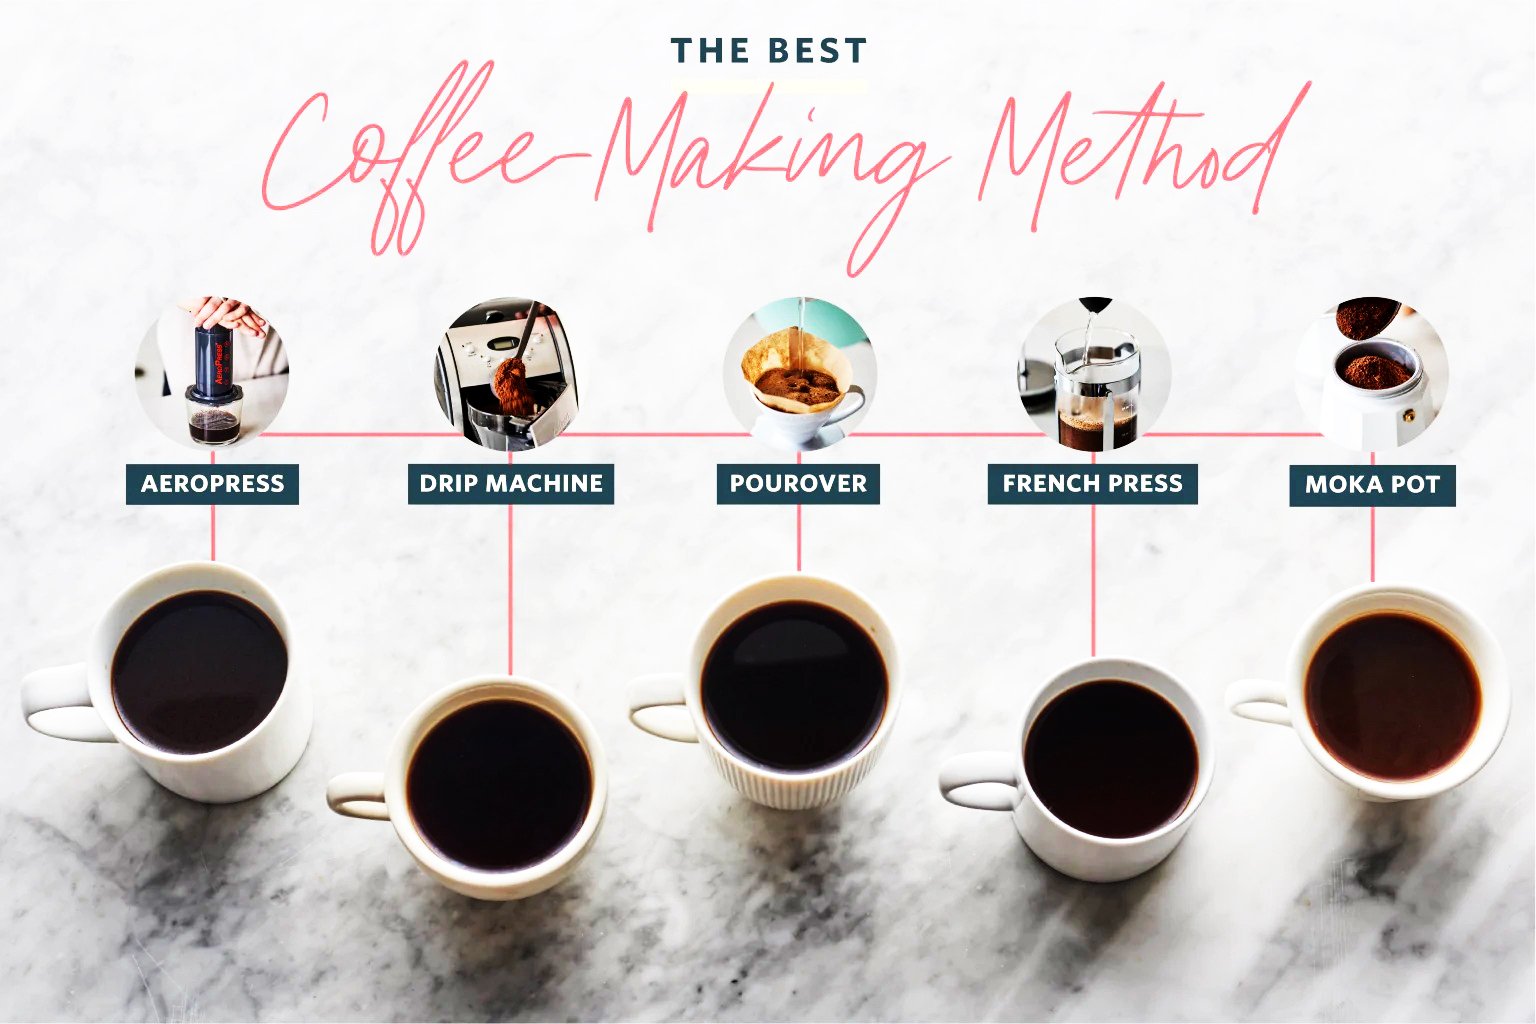 Cele mai populare metode de preparare a cafelei